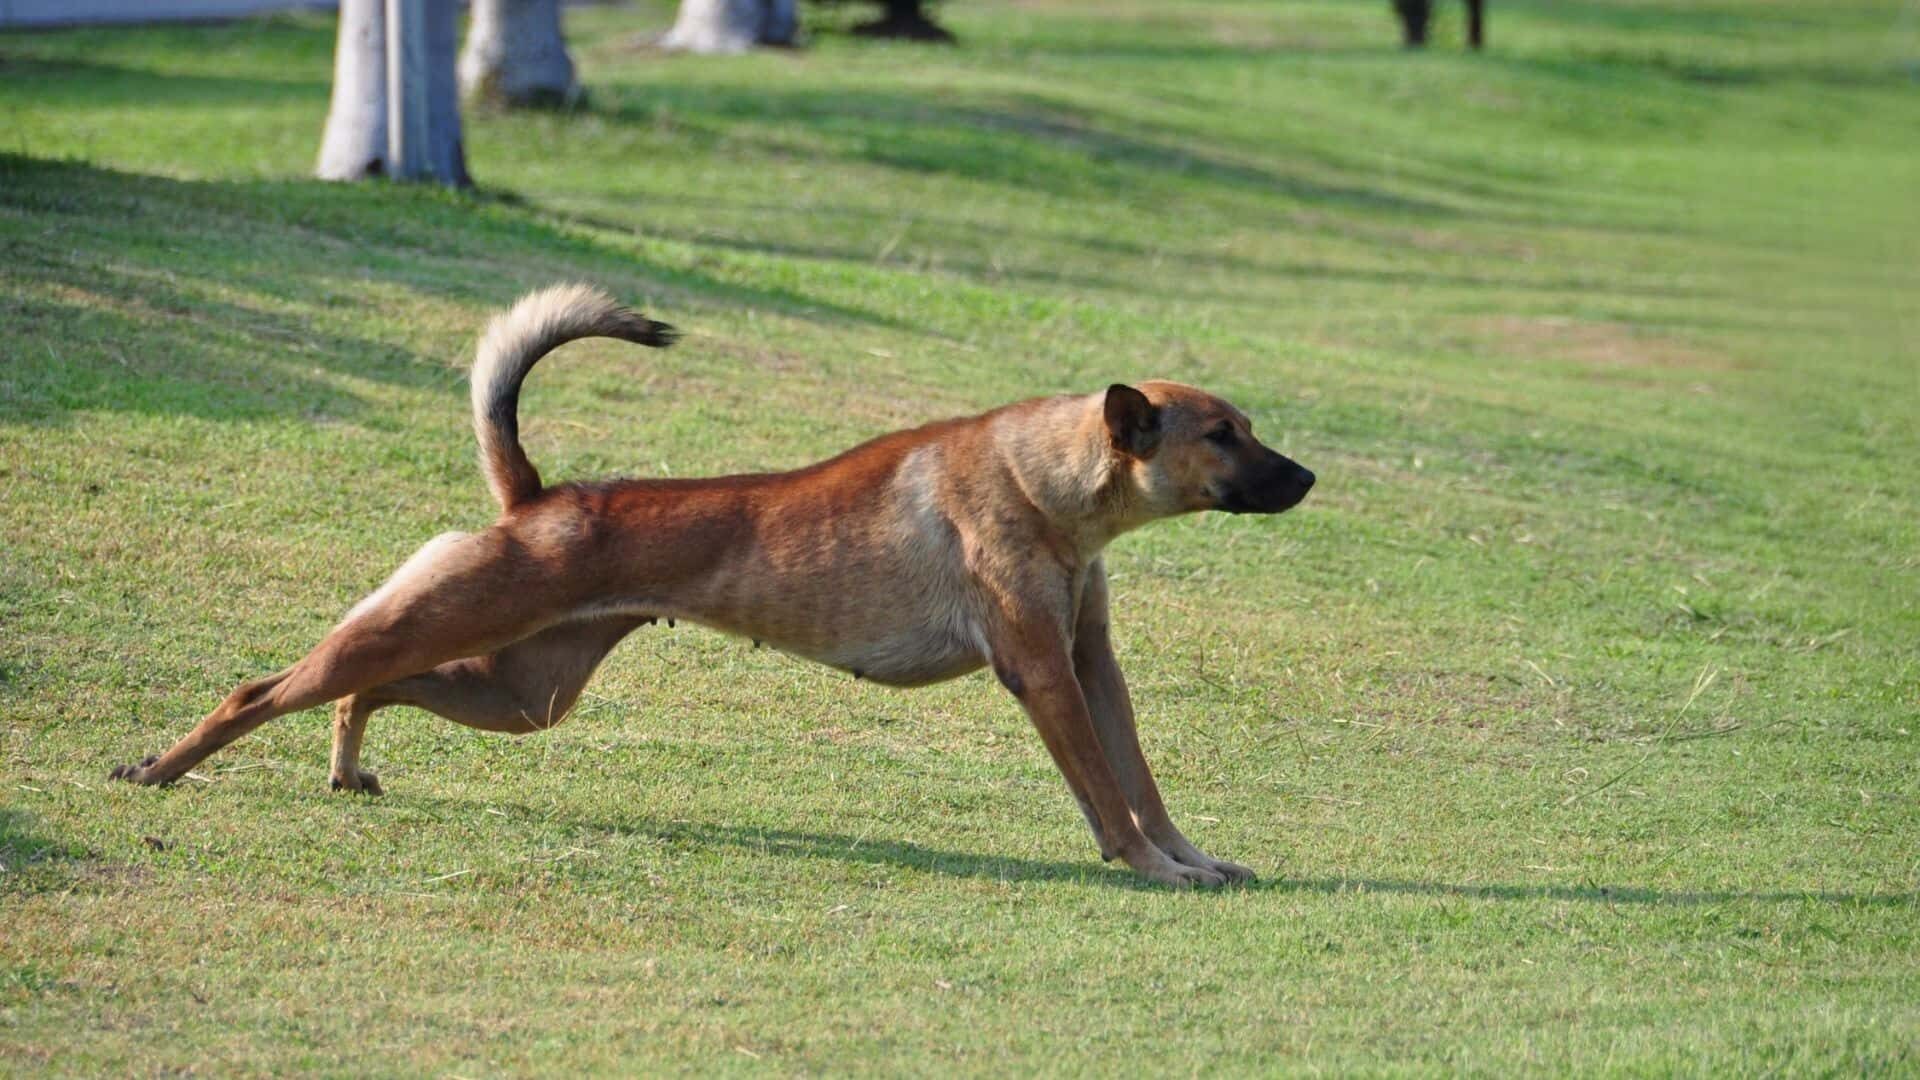 Exercise dog without fenced yard: